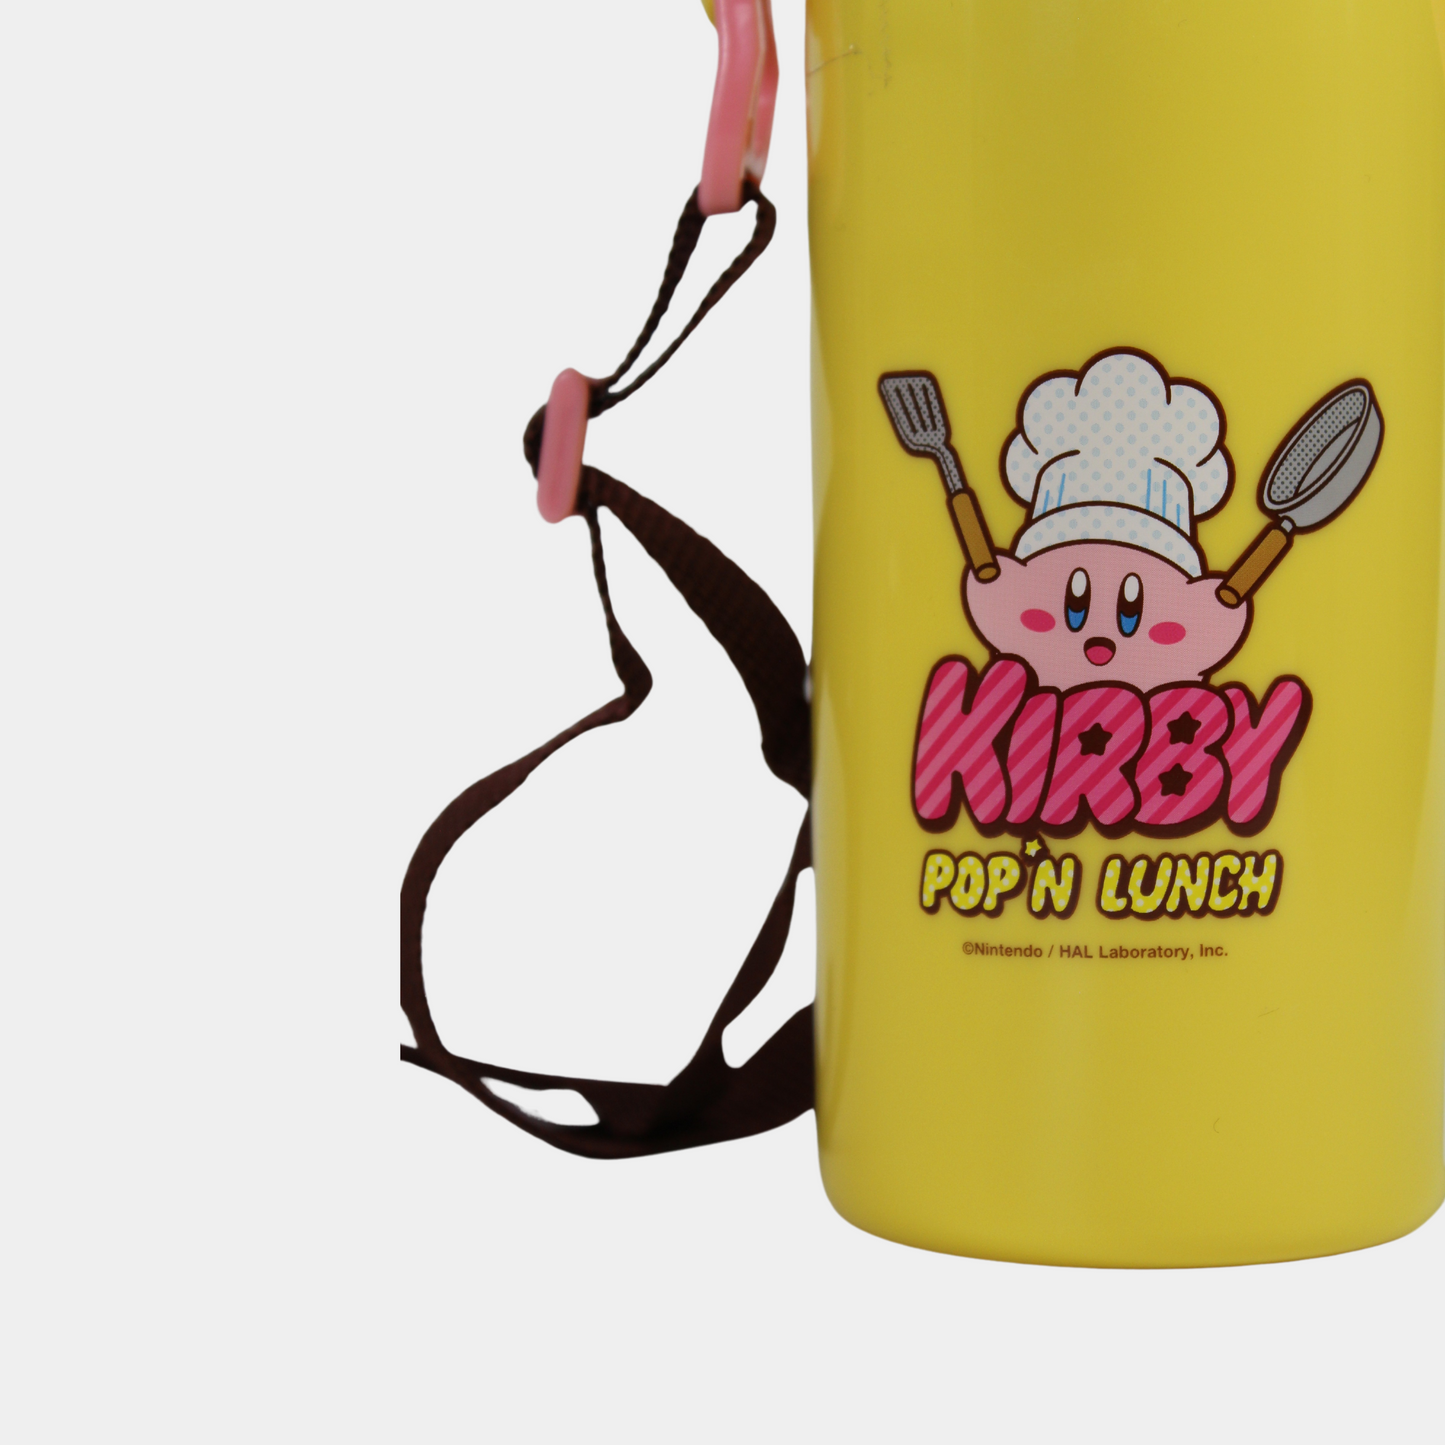 Kirby Bottle Pop Lunch